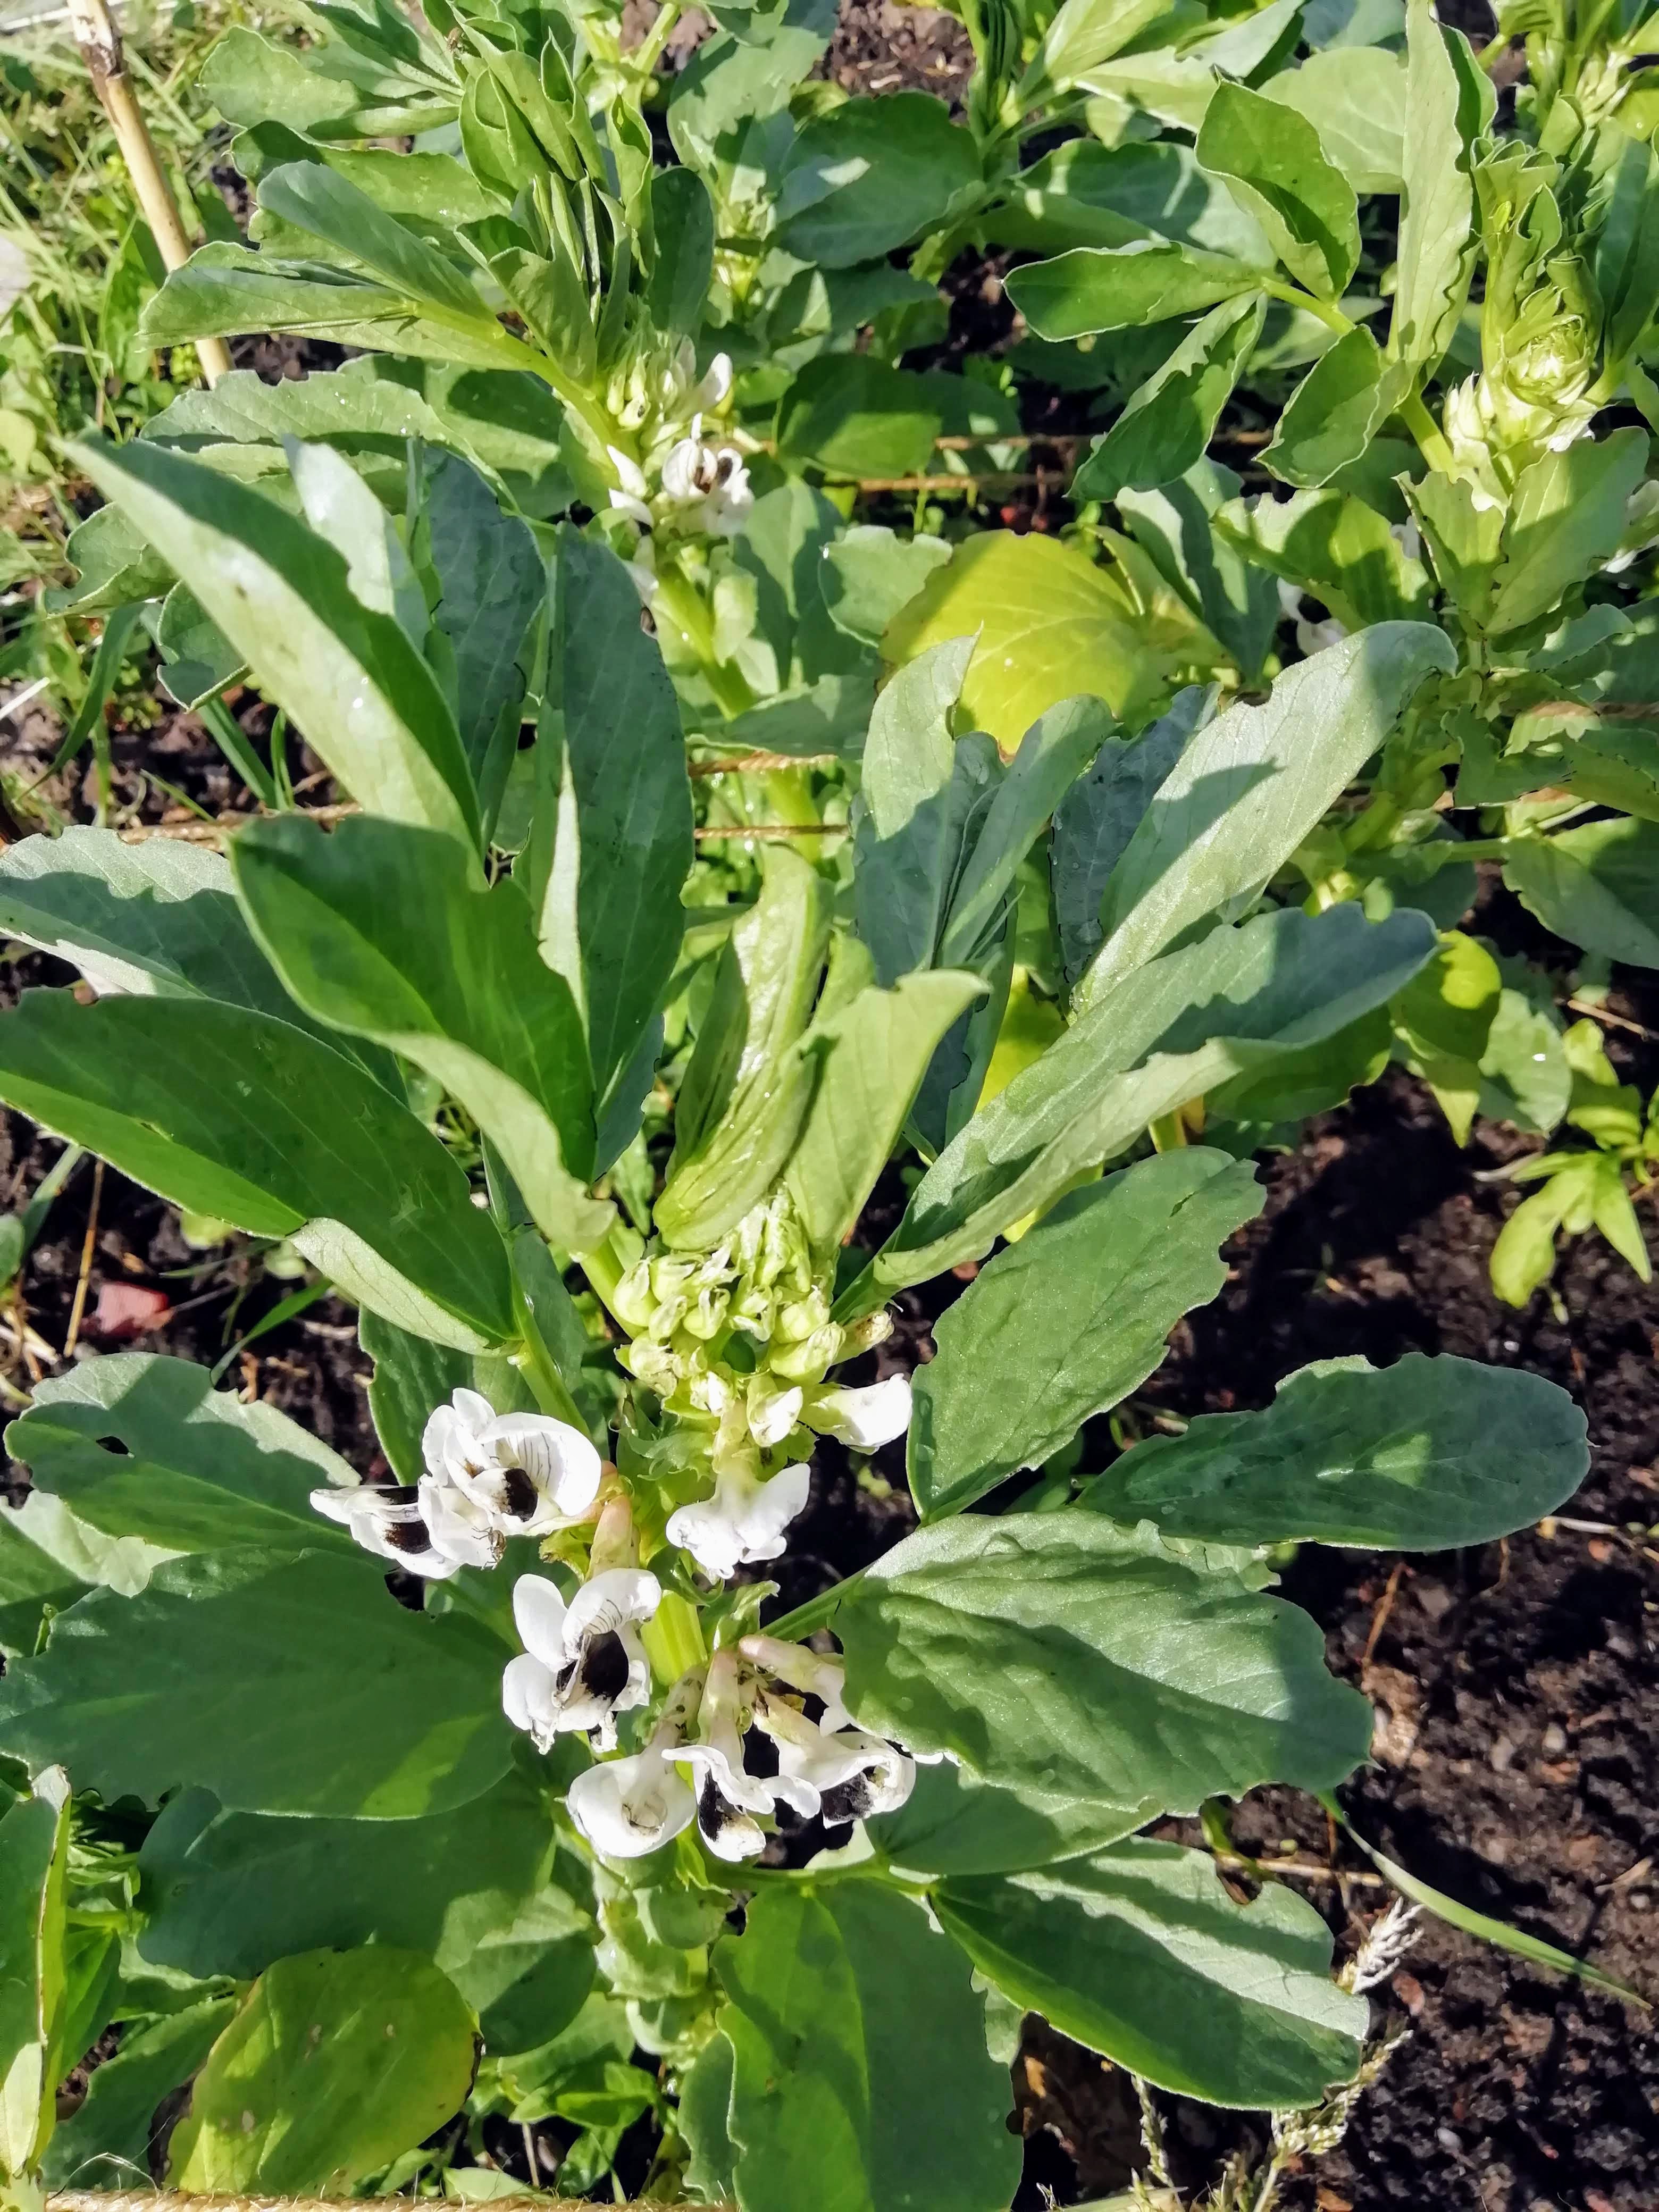 Field beans in flower